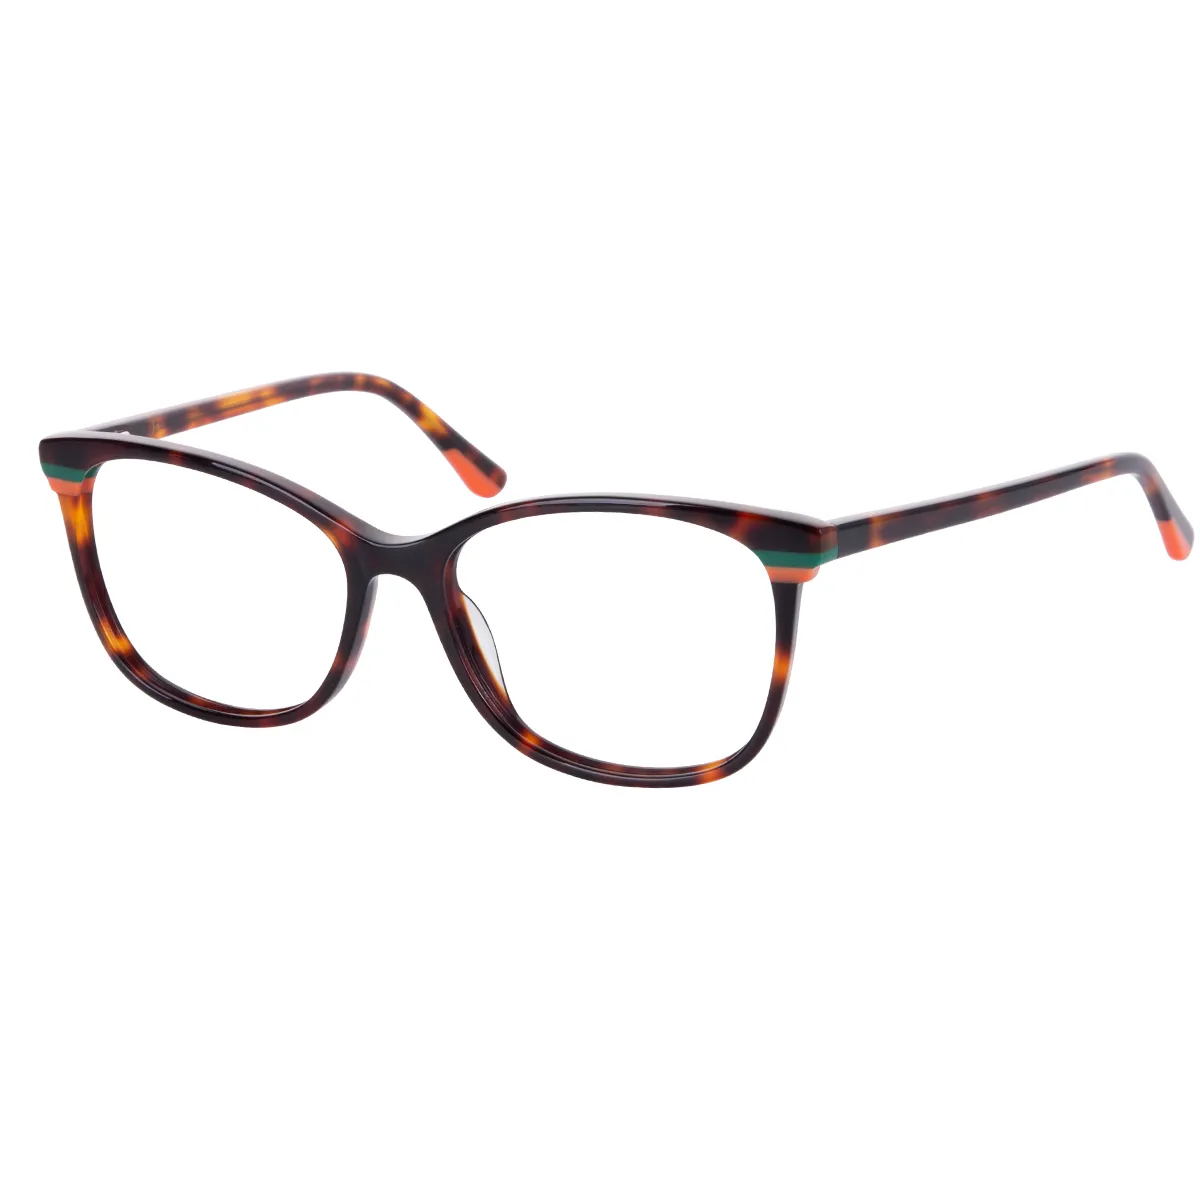 Abel - Rectangle Tortoiseshell Glasses for Women